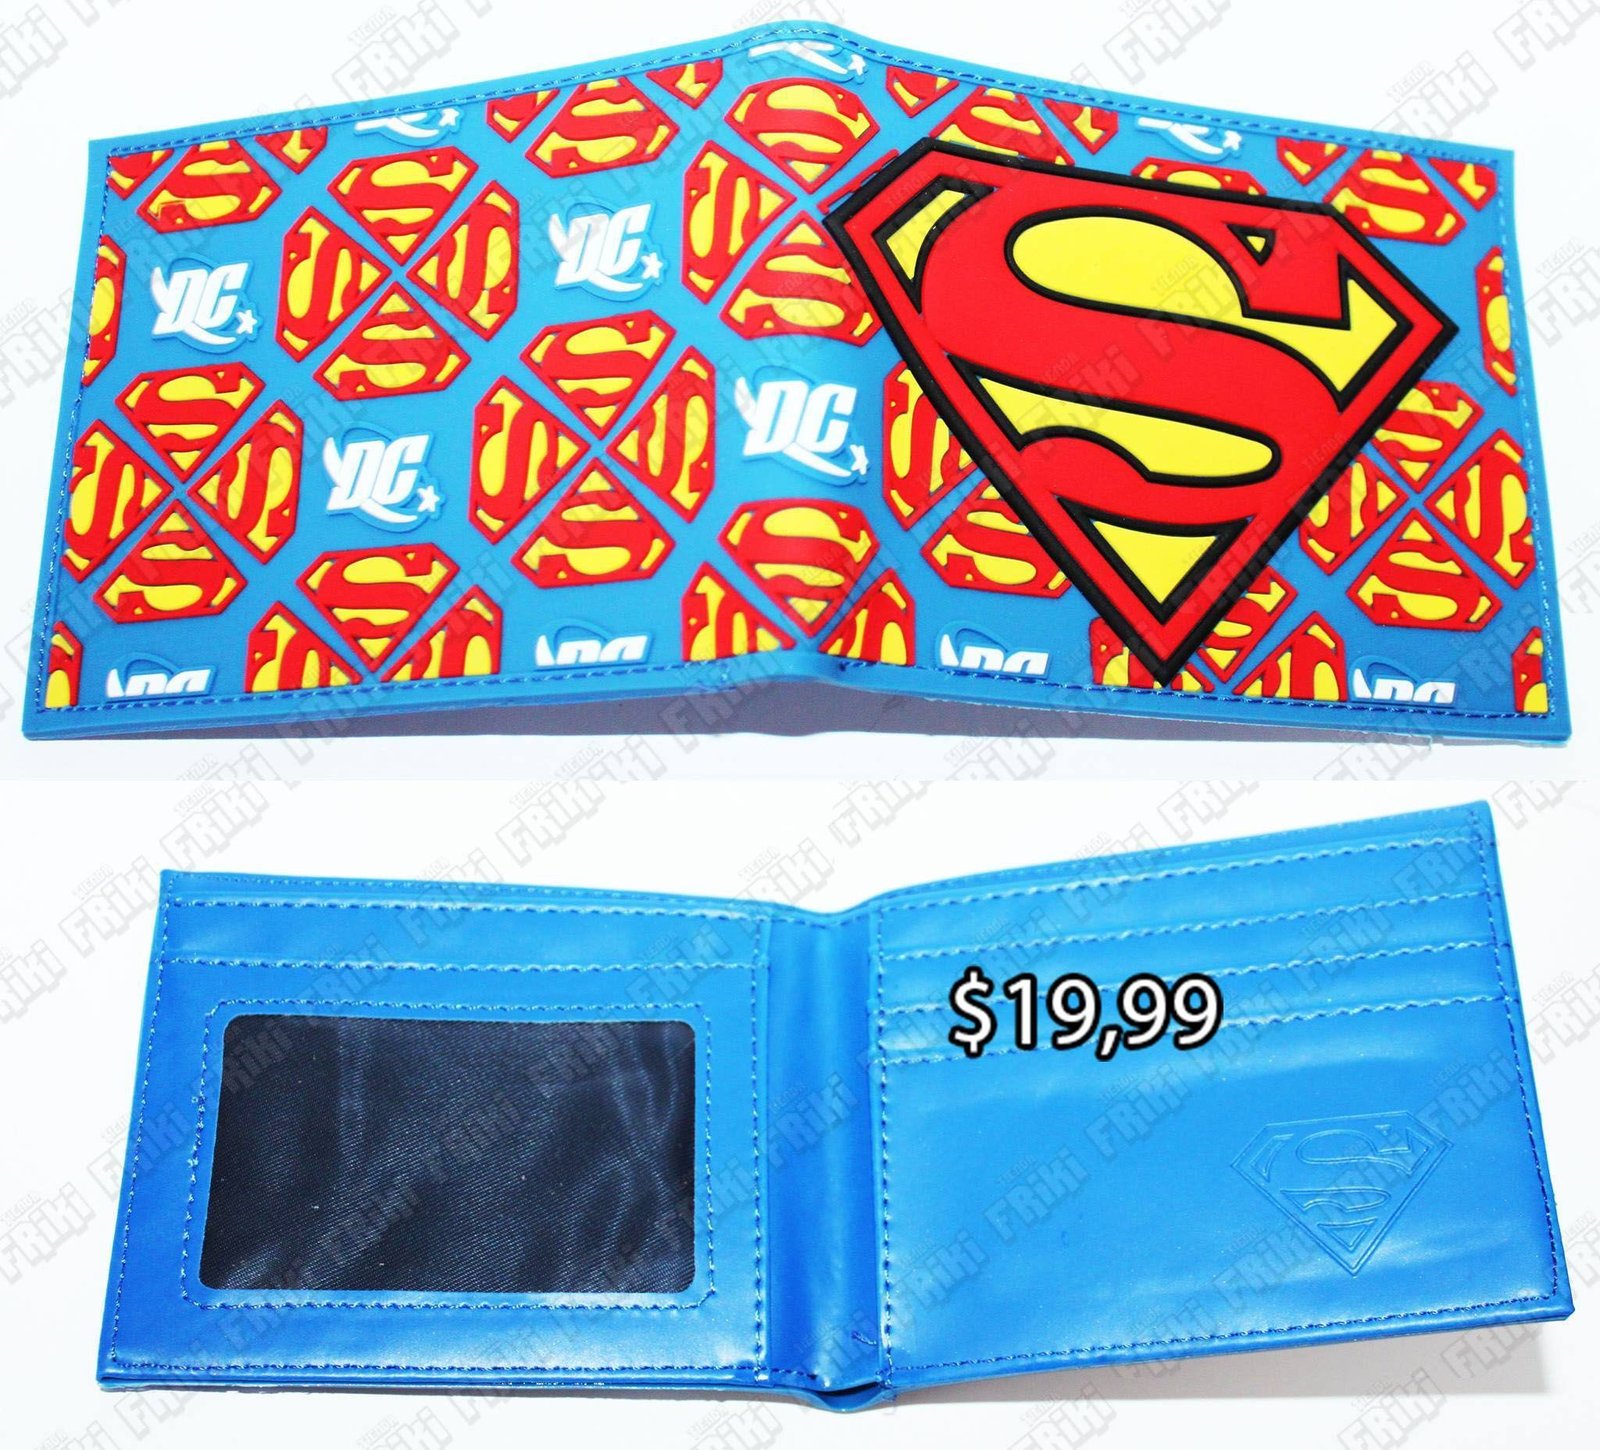 Billetera Cómics Superman Ecuador Comprar Venden, Bonita Apariencia perfecta para los fans de la serie, practica, Hermoso material de cuerina Color como en la foto Estado nuevo